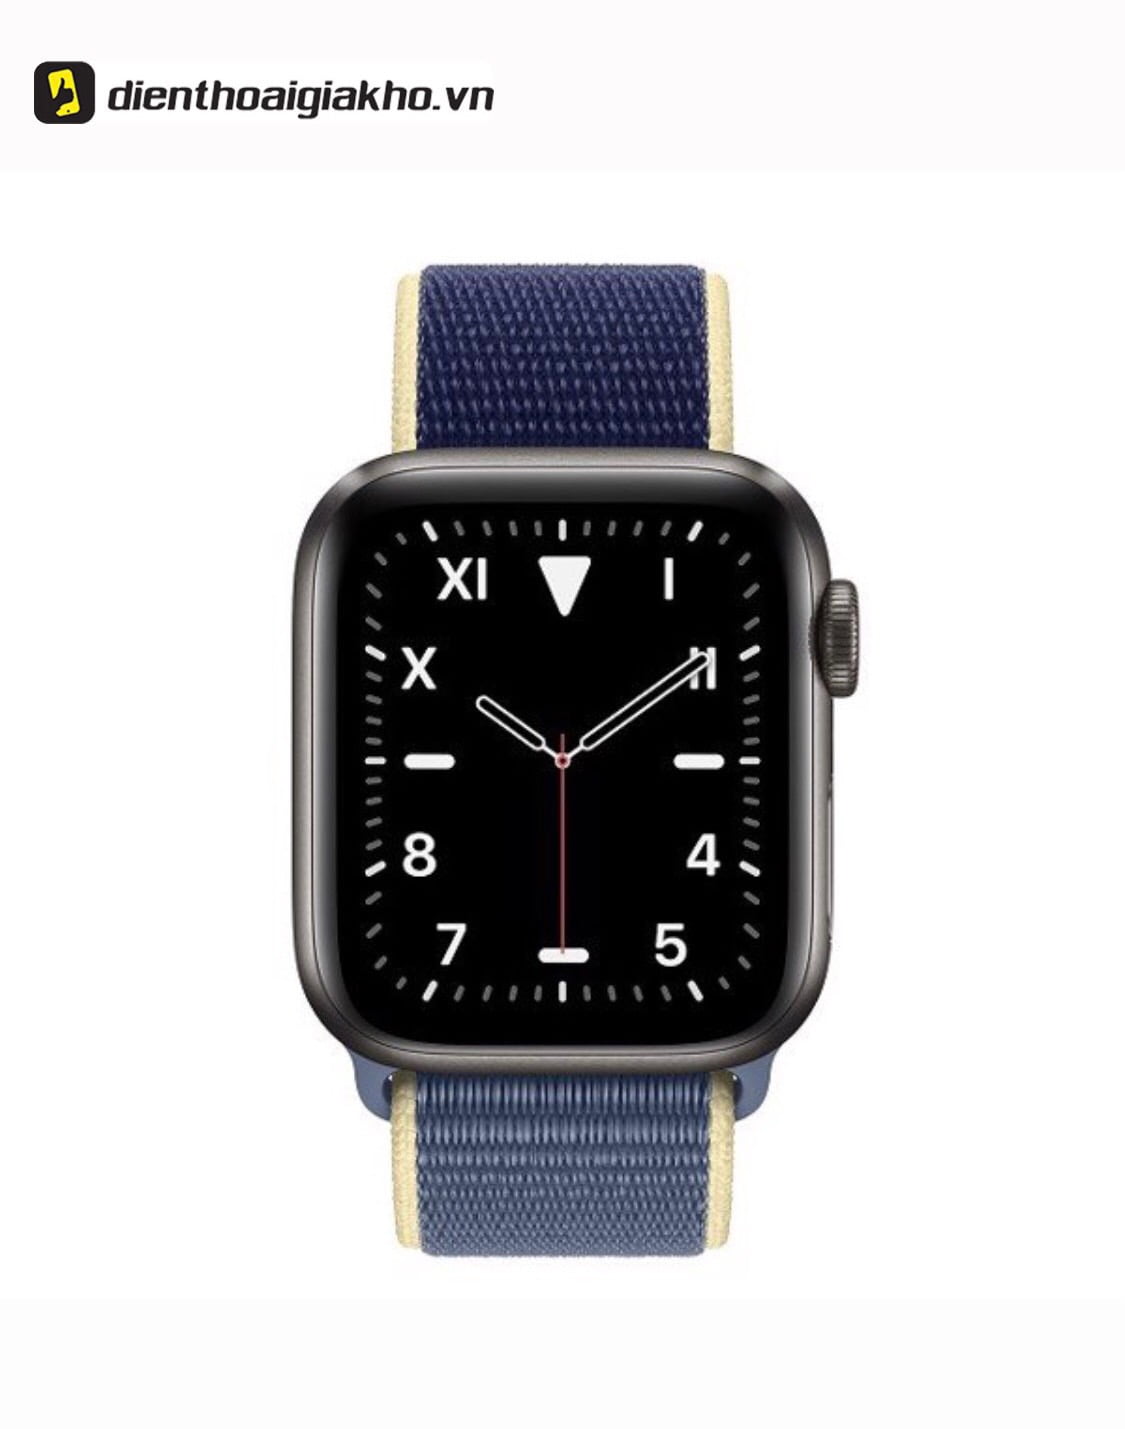 Apple Watch Edition là phiên bản cao cấp nhất của Apple Watch.